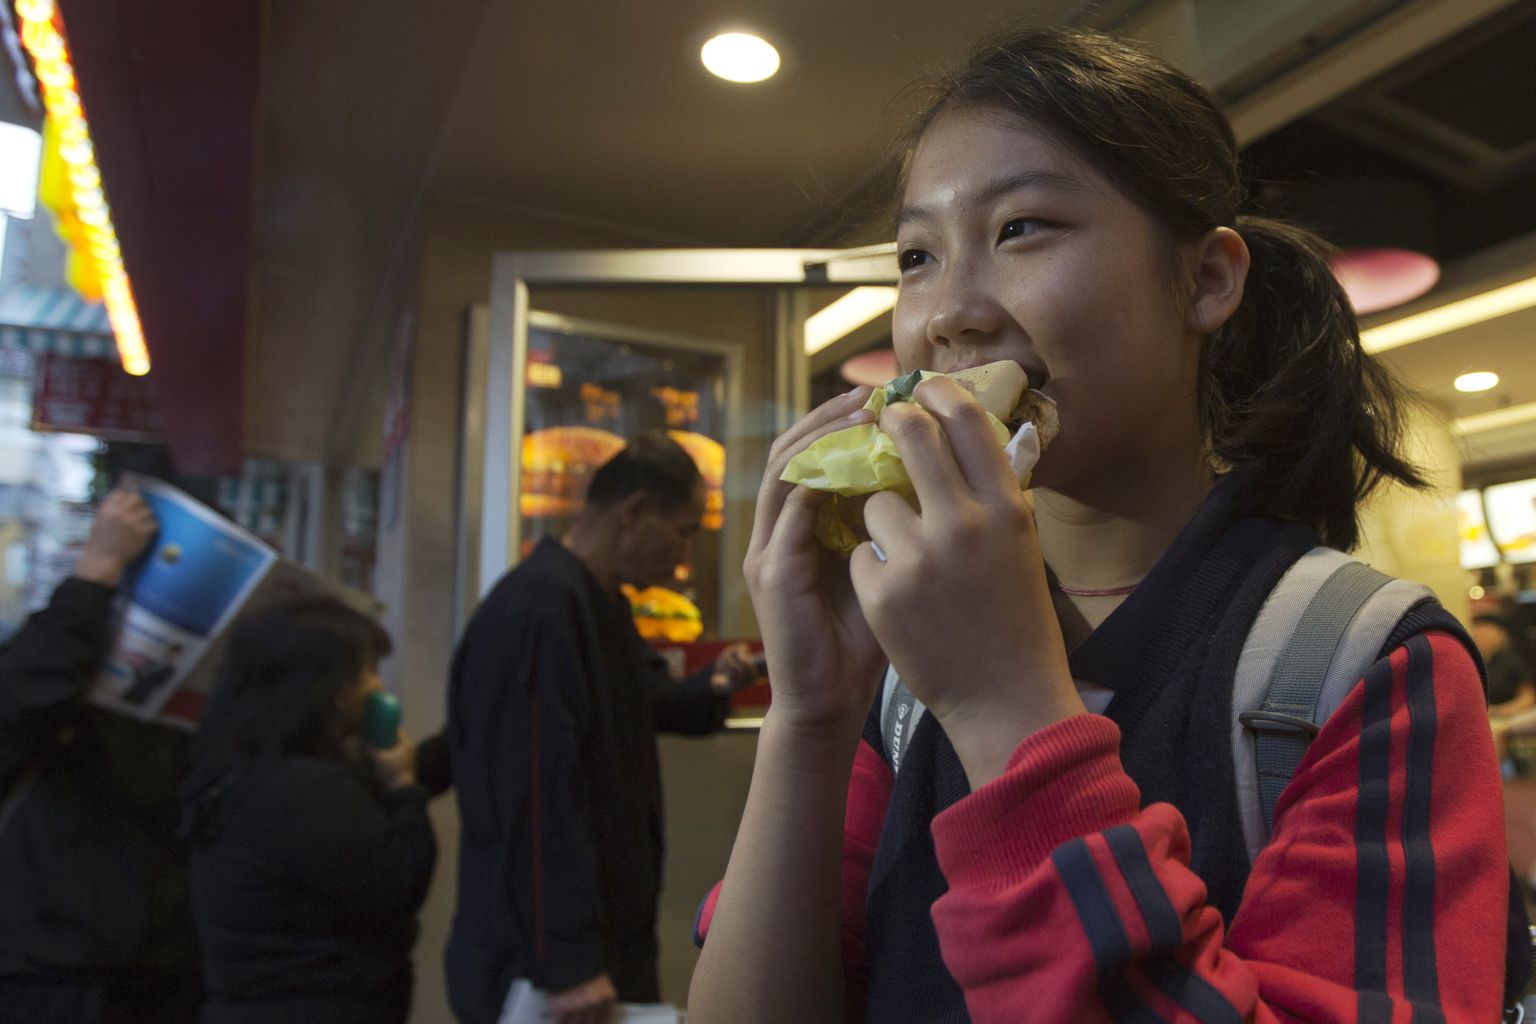 Pilt on illustreeriv: tüdruk nautimas McMuffini burgerit.